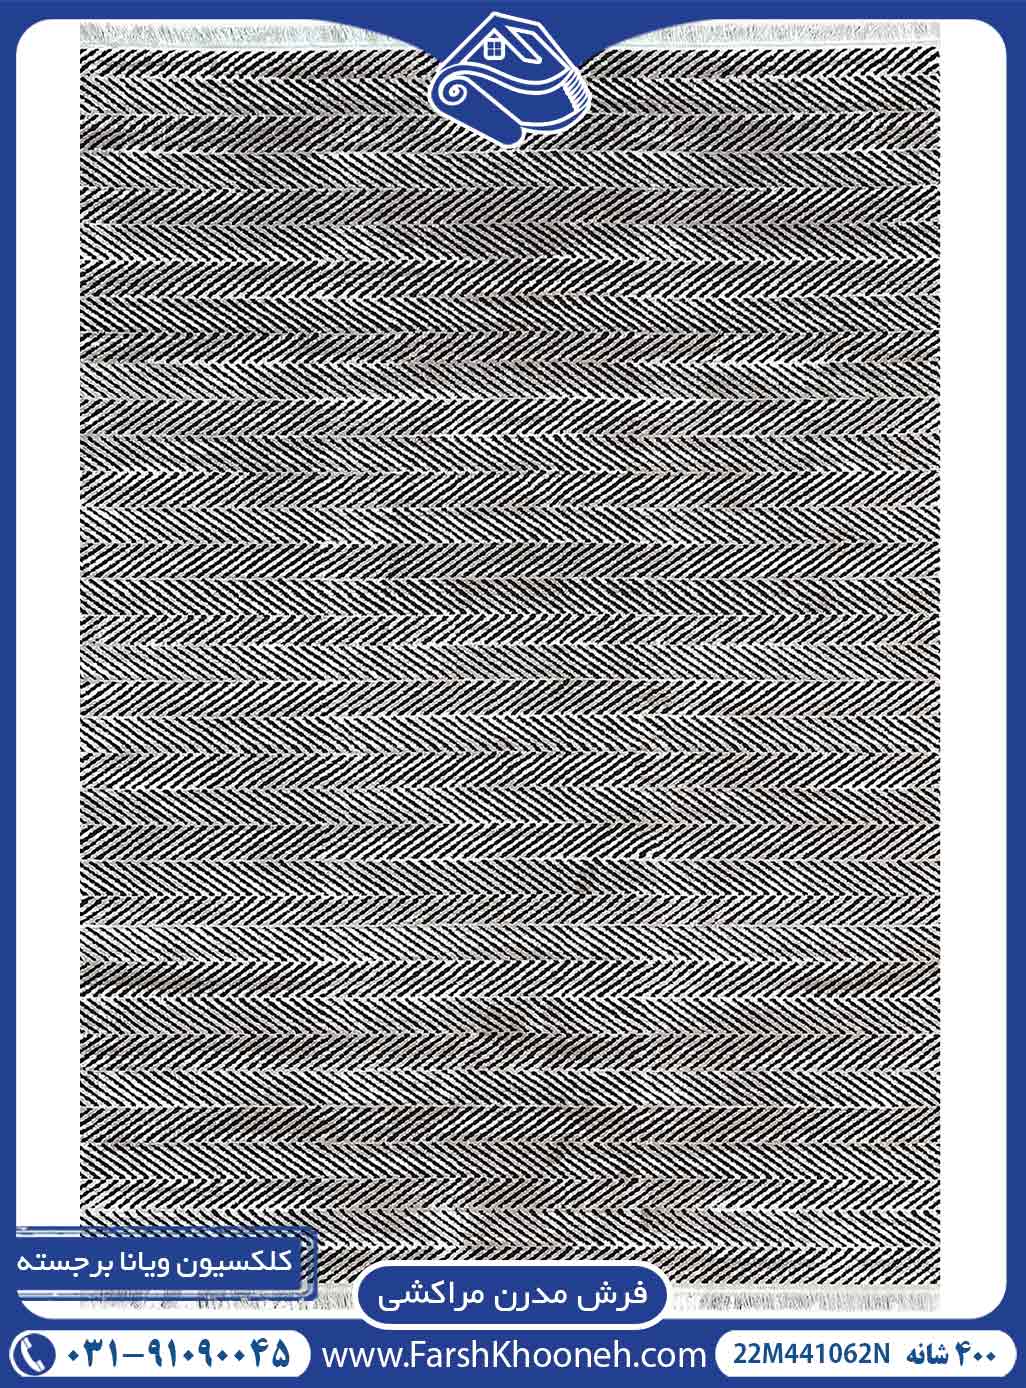 فرش مراکشی بدون حاشیه نقره ای کد 441062N0